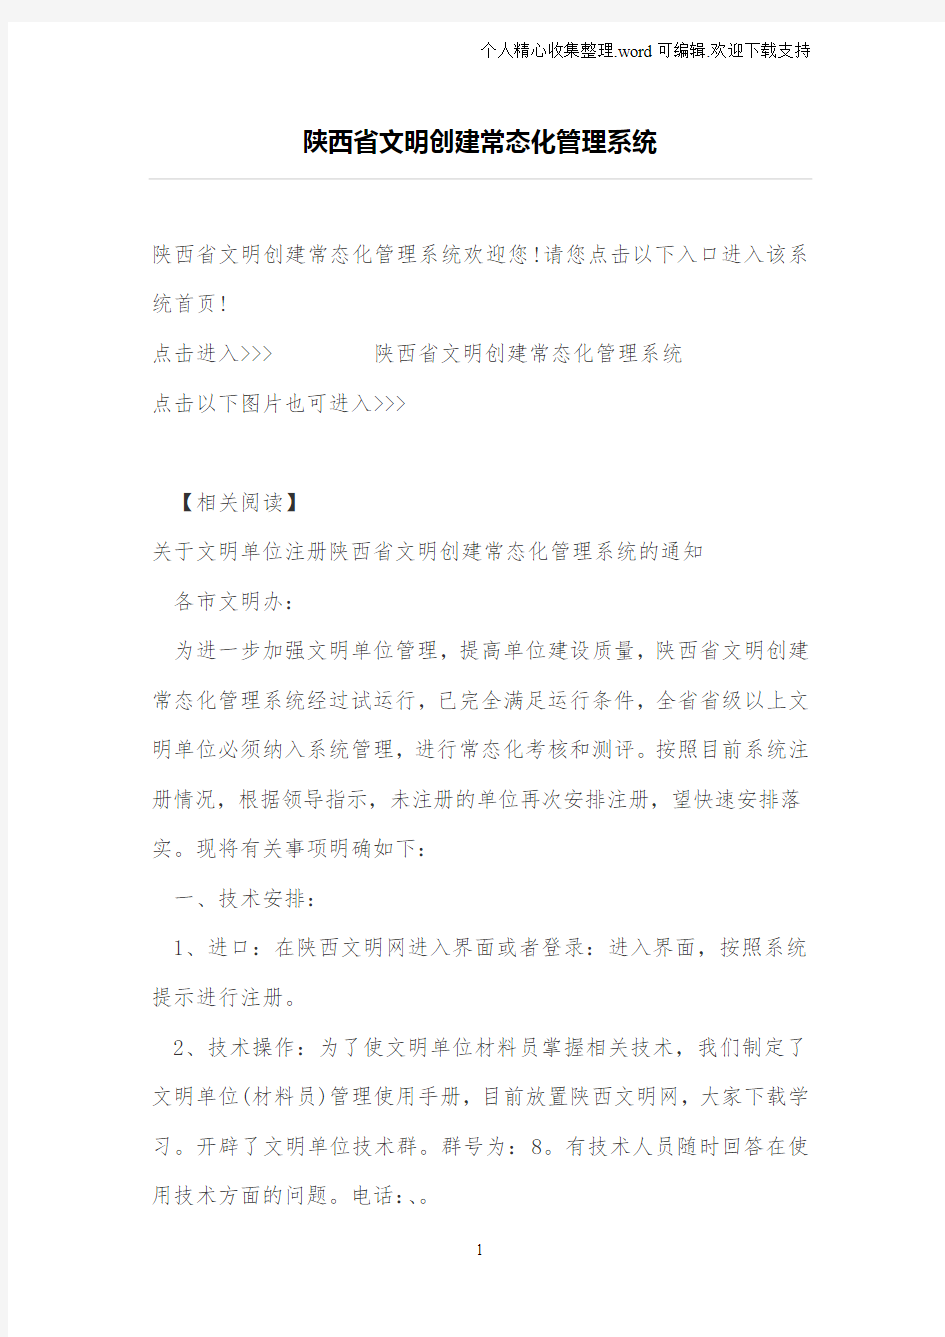 陕西省文明创建常态化管理系统